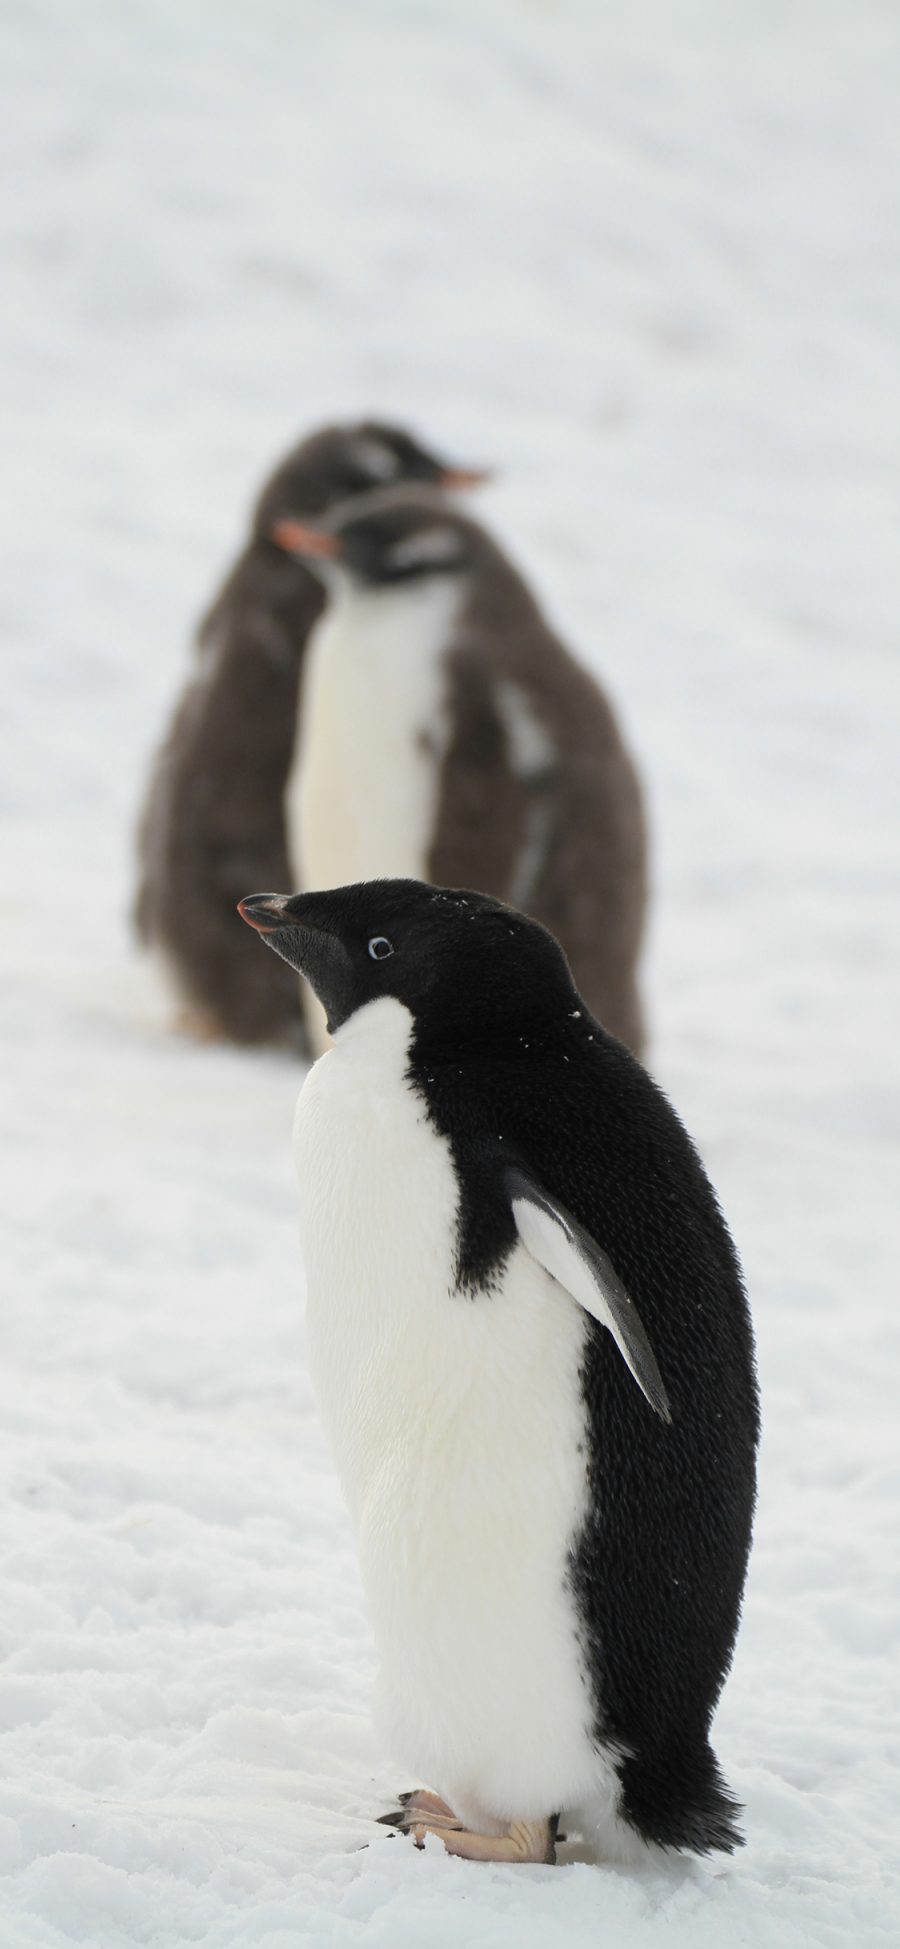 [2436×1125]企鹅 南极 可爱 黑白 雪地 苹果手机壁纸图片